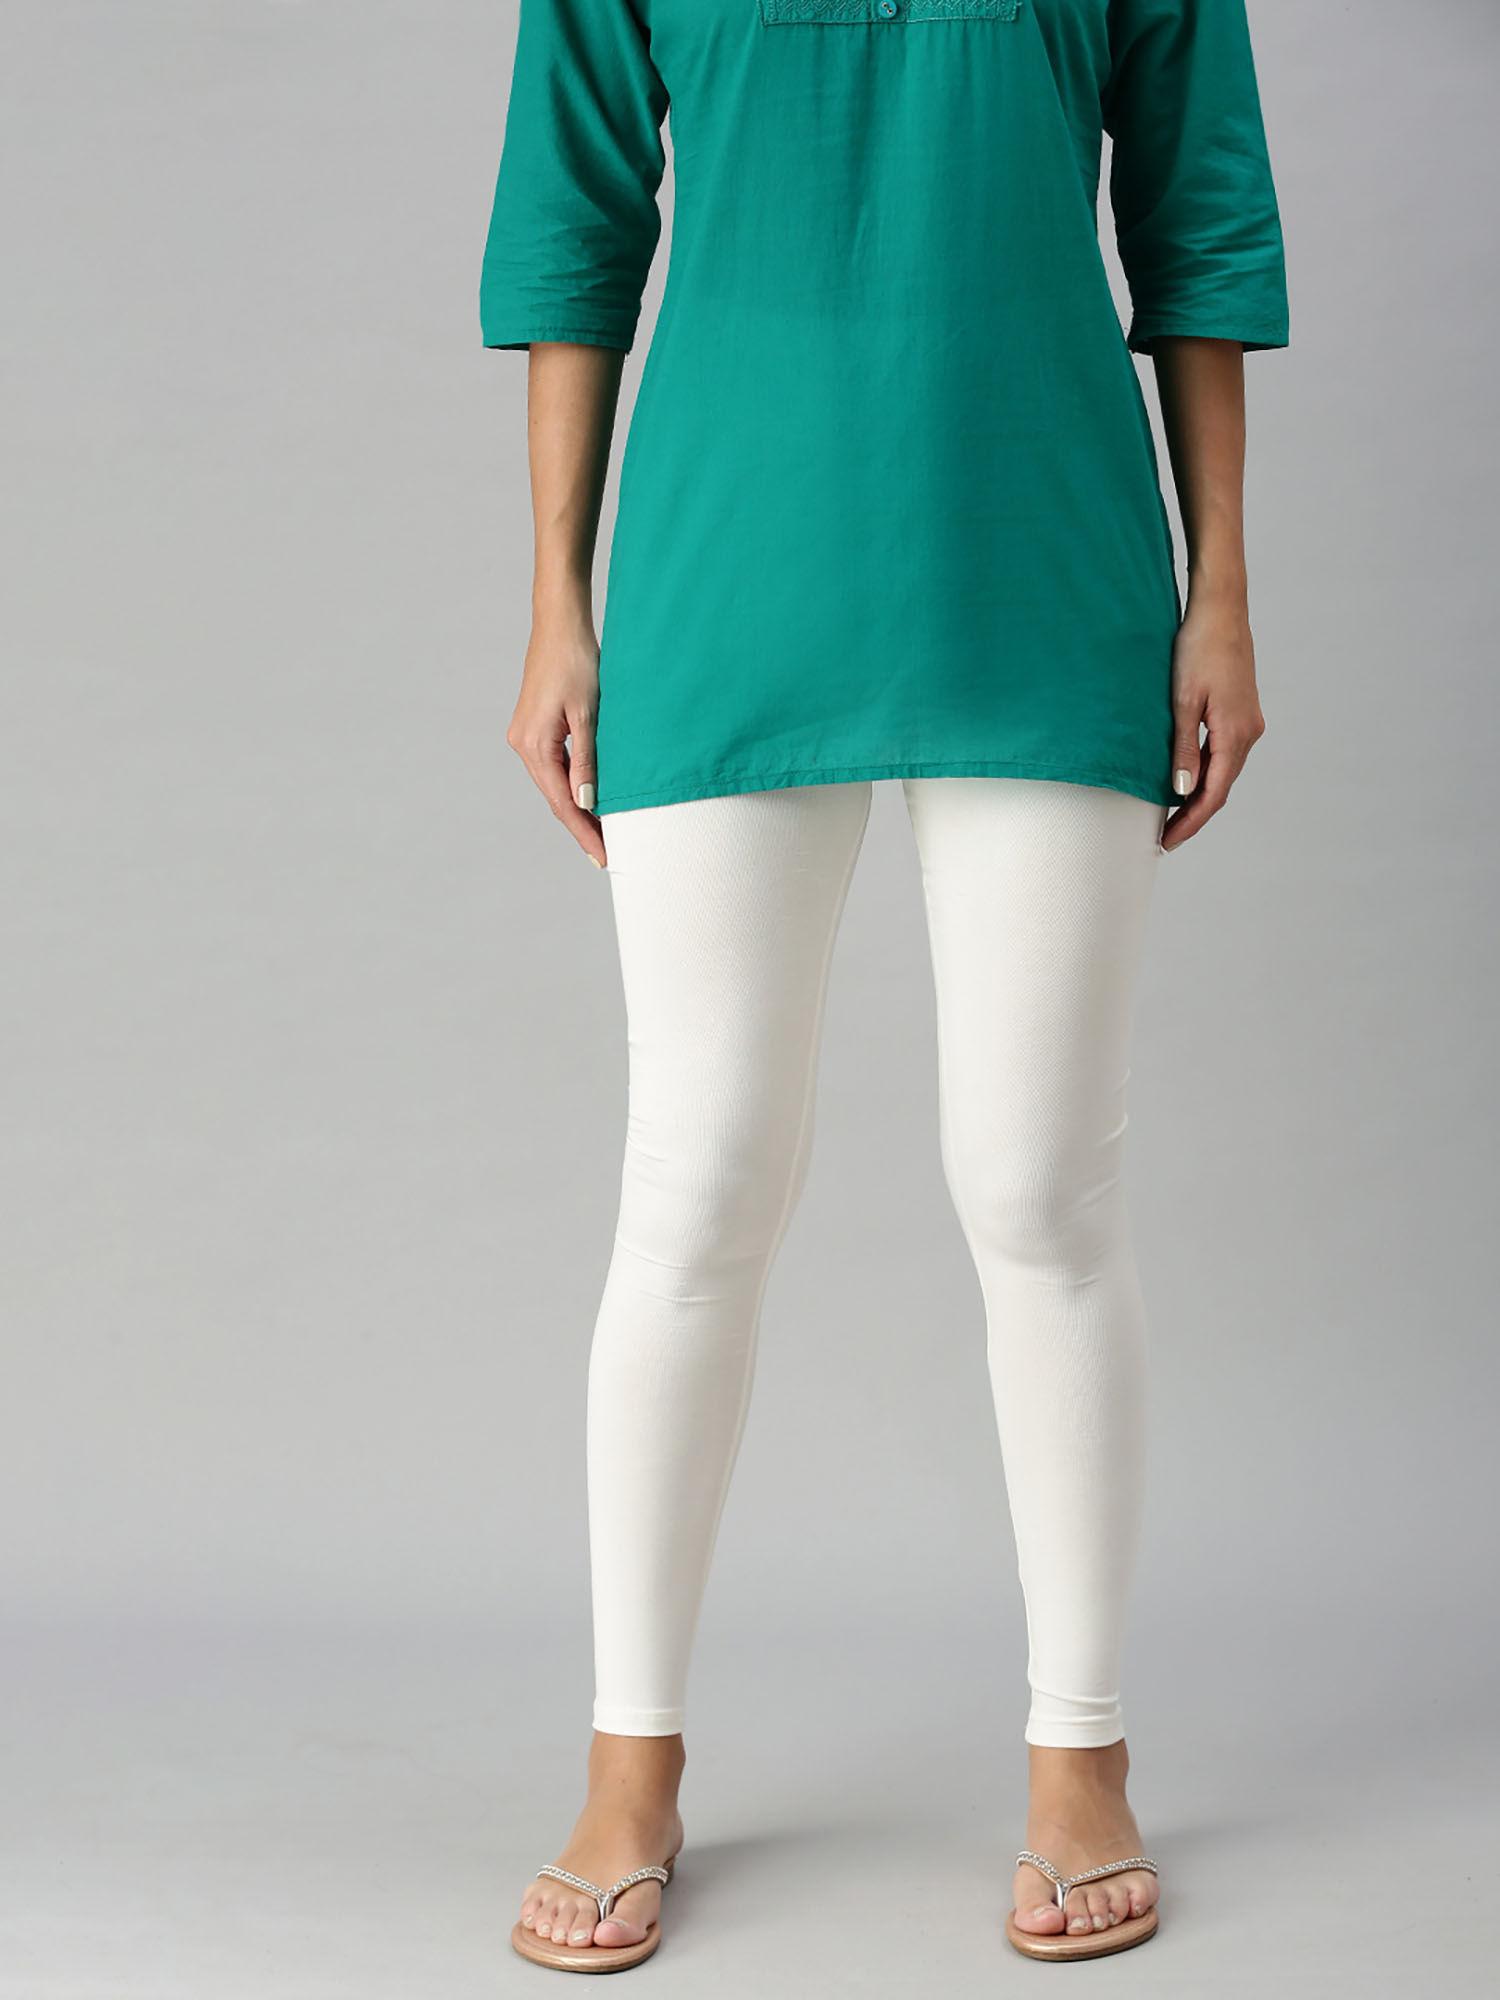 women's leggings chudidhar solid cotton lycra offwhite